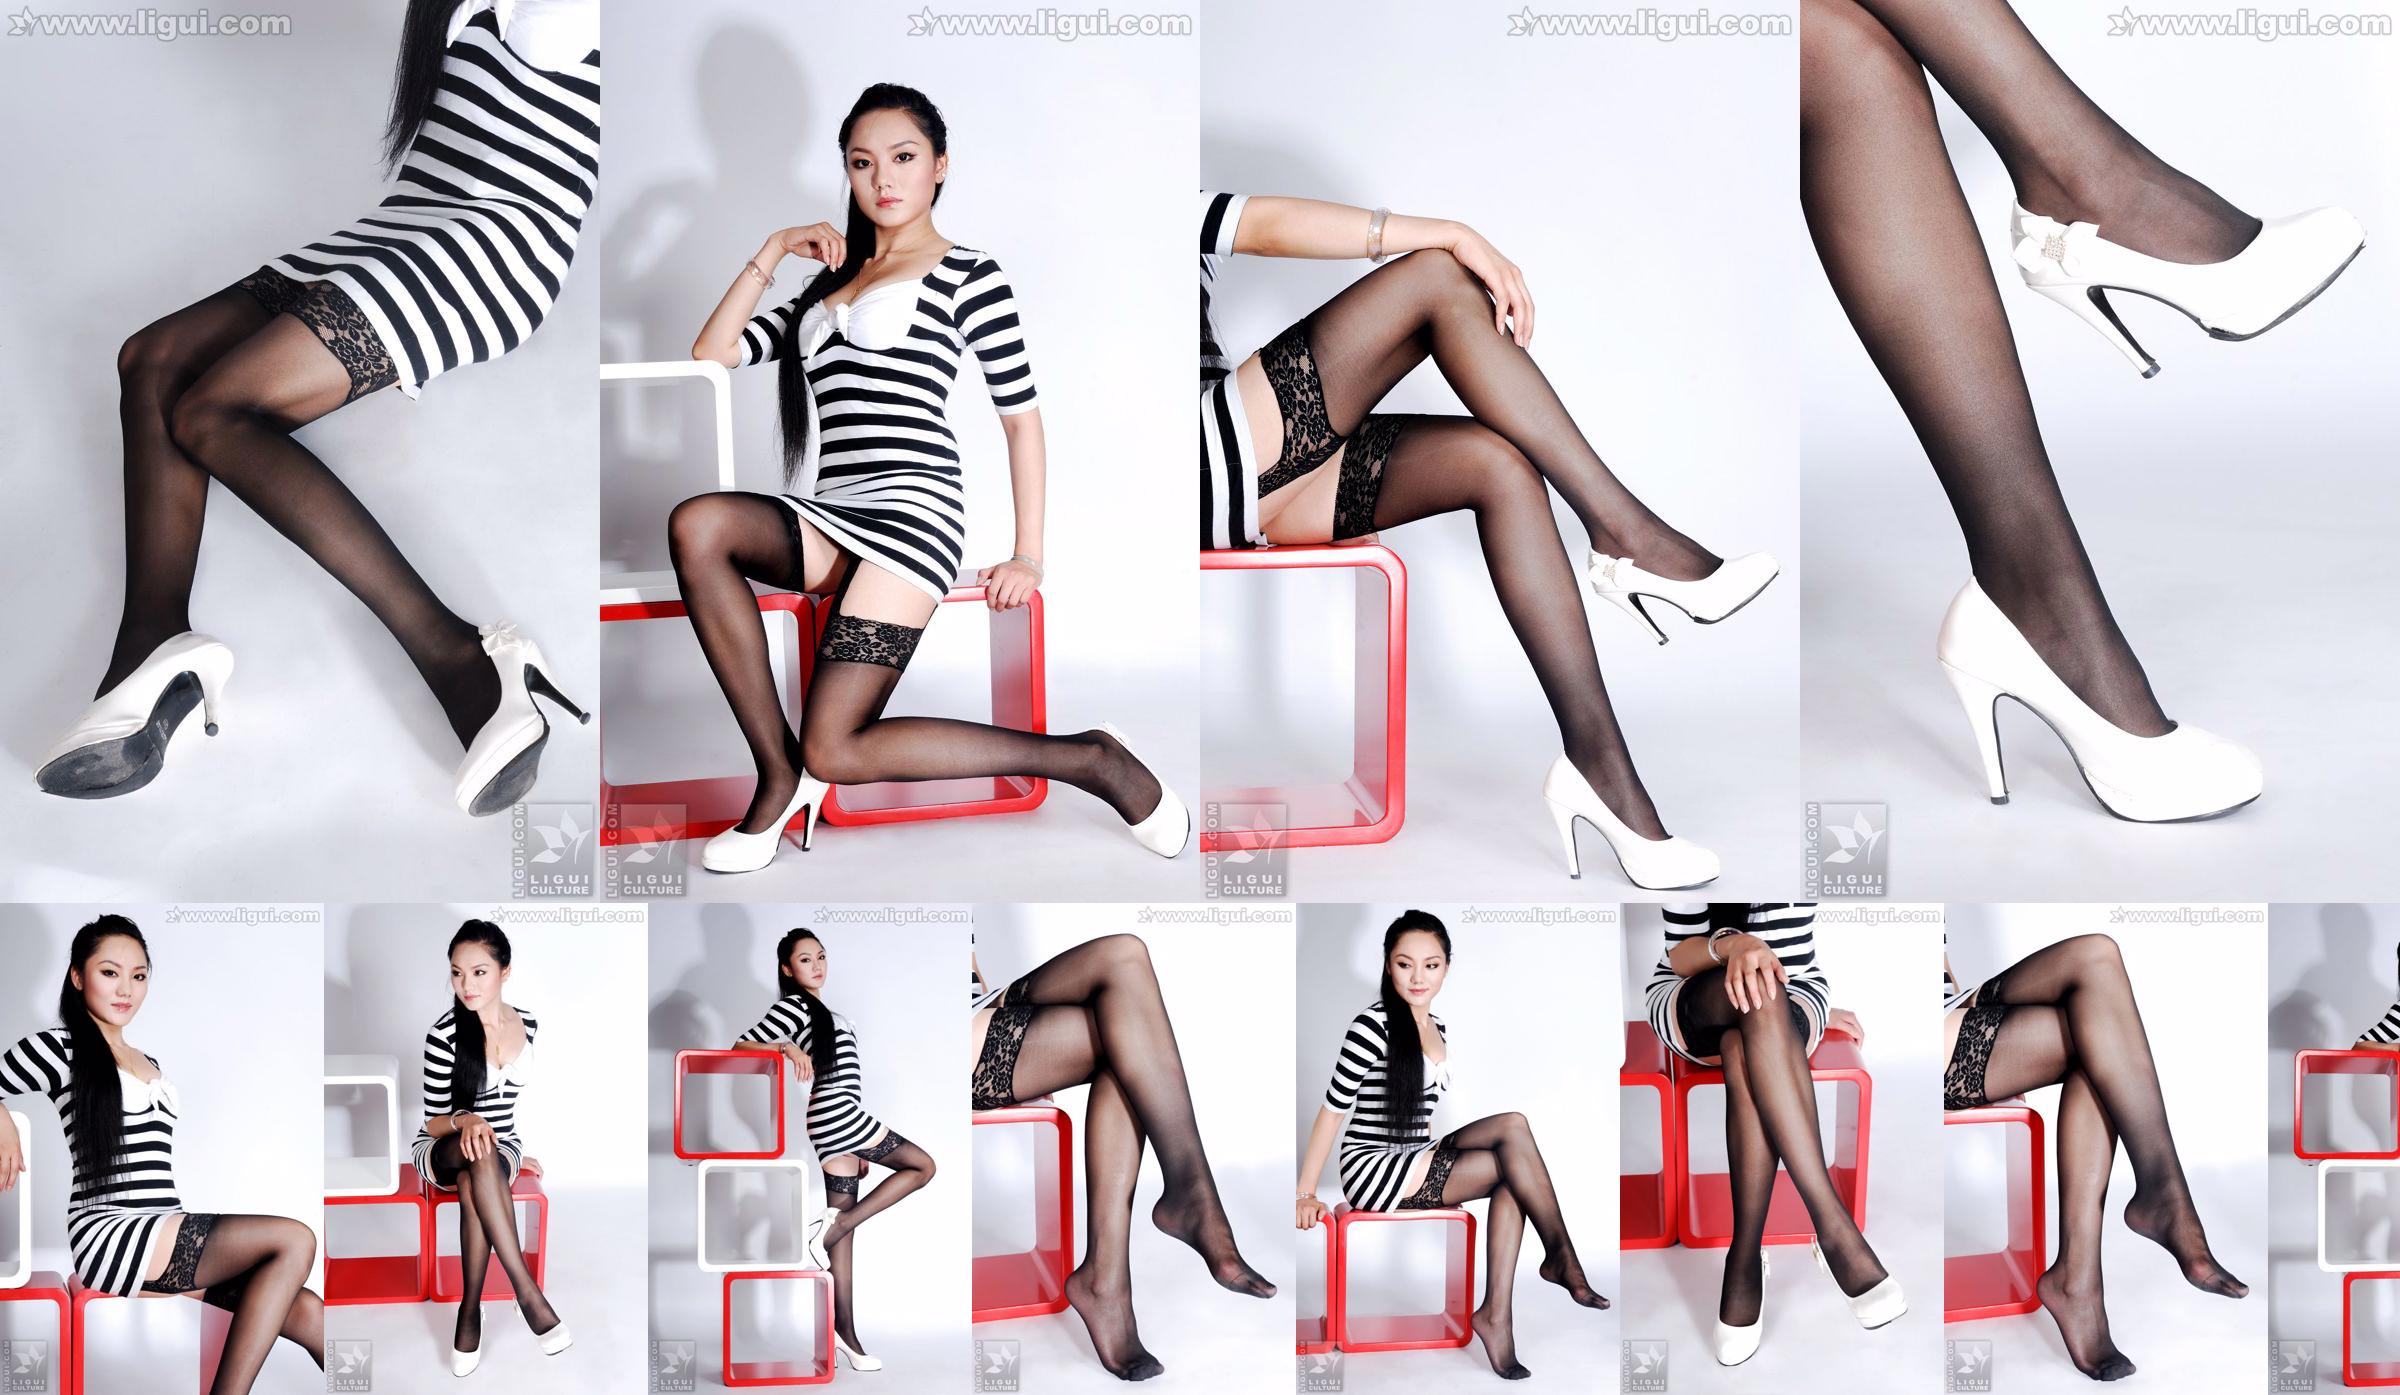 Model Yang Zi "Pesona Stoking dalam Dekorasi Rumah Sederhana" [丽 柜 LiGui] Foto kaki dan kaki giok yang indah No.6a6ad5 Halaman 3